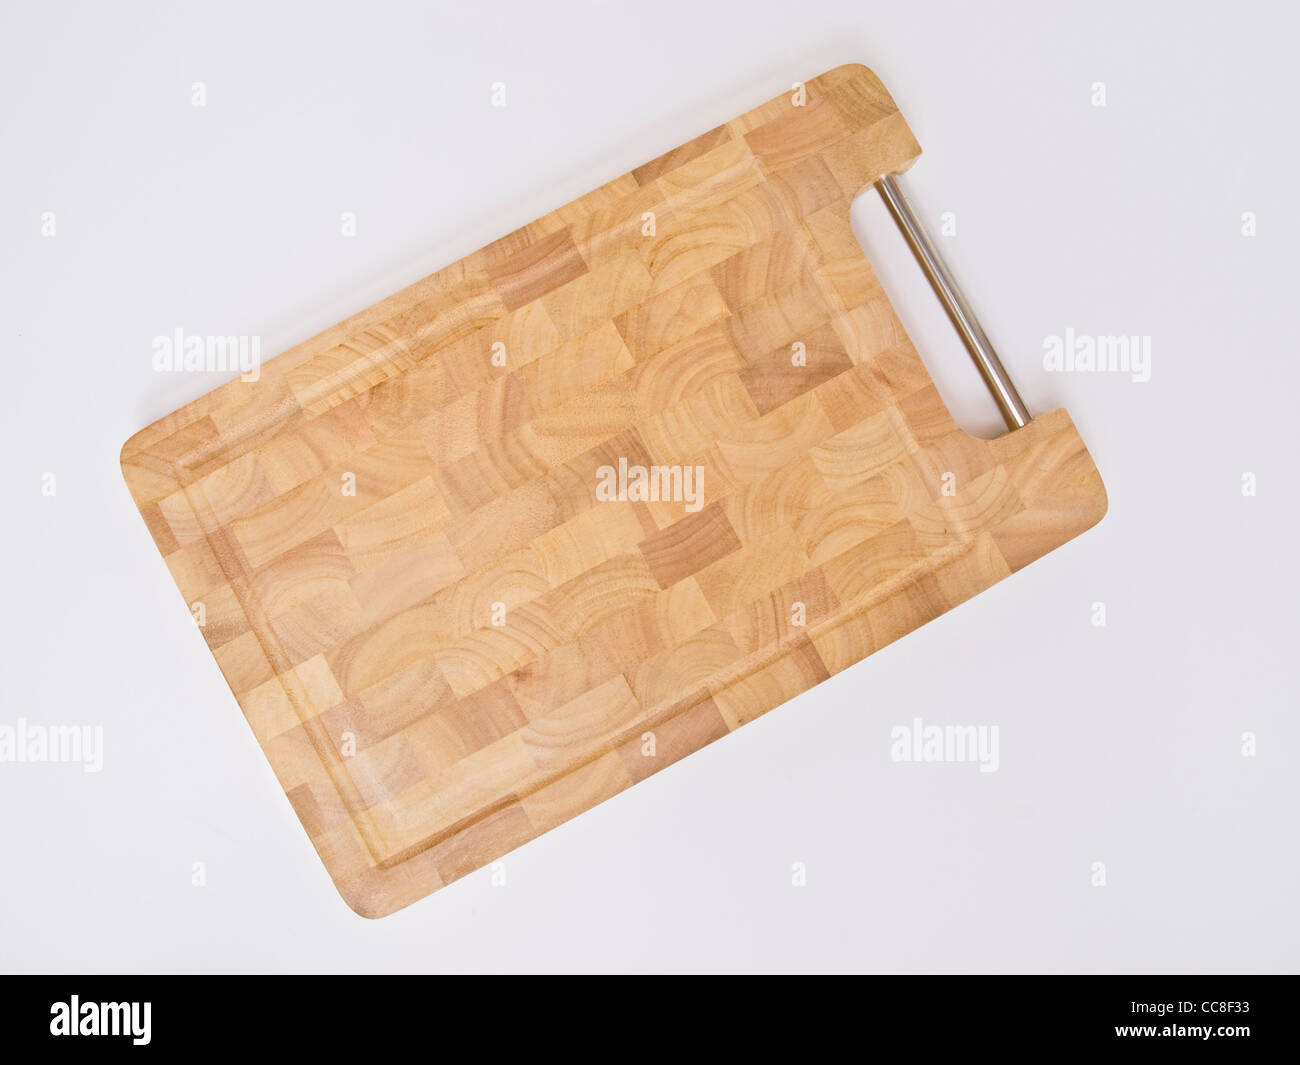 Detailphoto eines Schneidbrettes | Detail photo of a cutting board Stock Photo